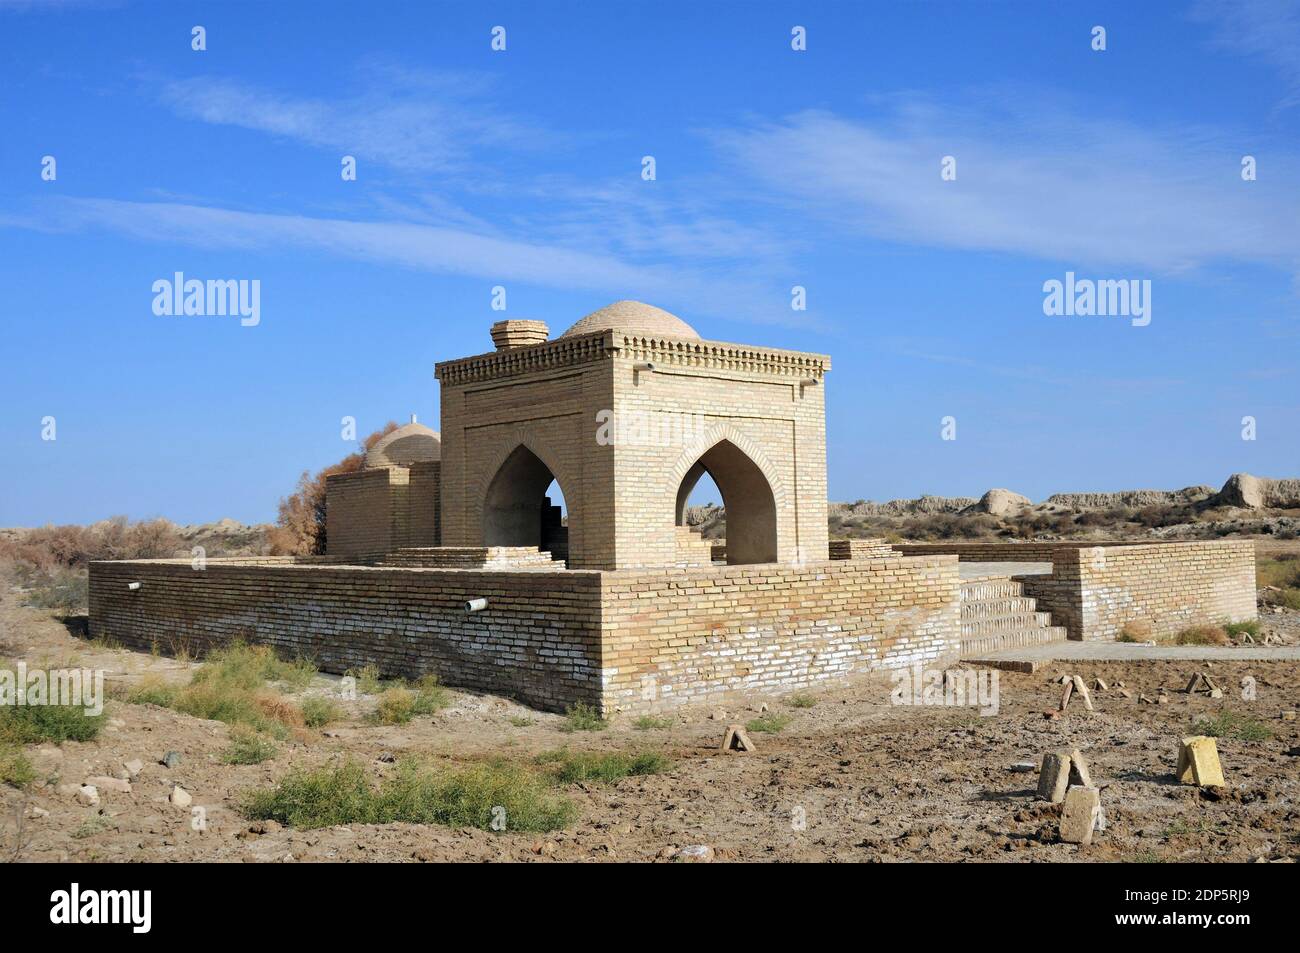 Ahmet Zamji Grab wurde im 8. Jahrhundert gebaut. Pehlivan Ahmet Grab befindet sich auf der Seite des Grabes. Merv, Turkmenistan. Stockfoto